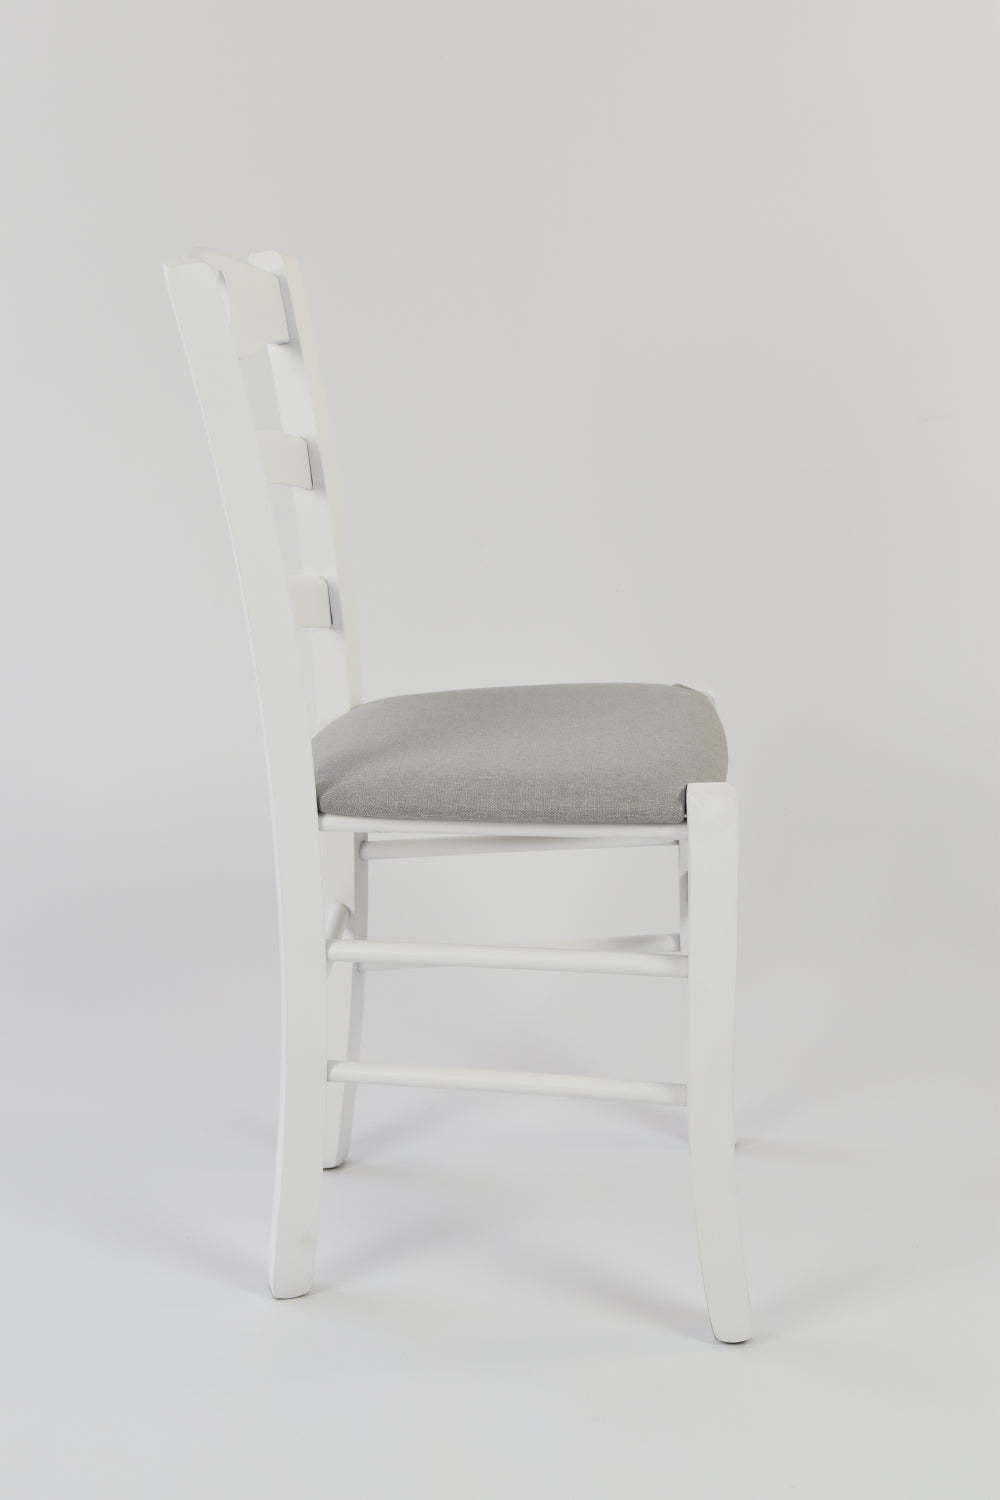 Tommychairs - Set 4 sillas de Cocina y Comedor Cuore, Estructura en Madera de Haya barnizada Color Blanco y Asiento tapizado en Tejido Gris Perla